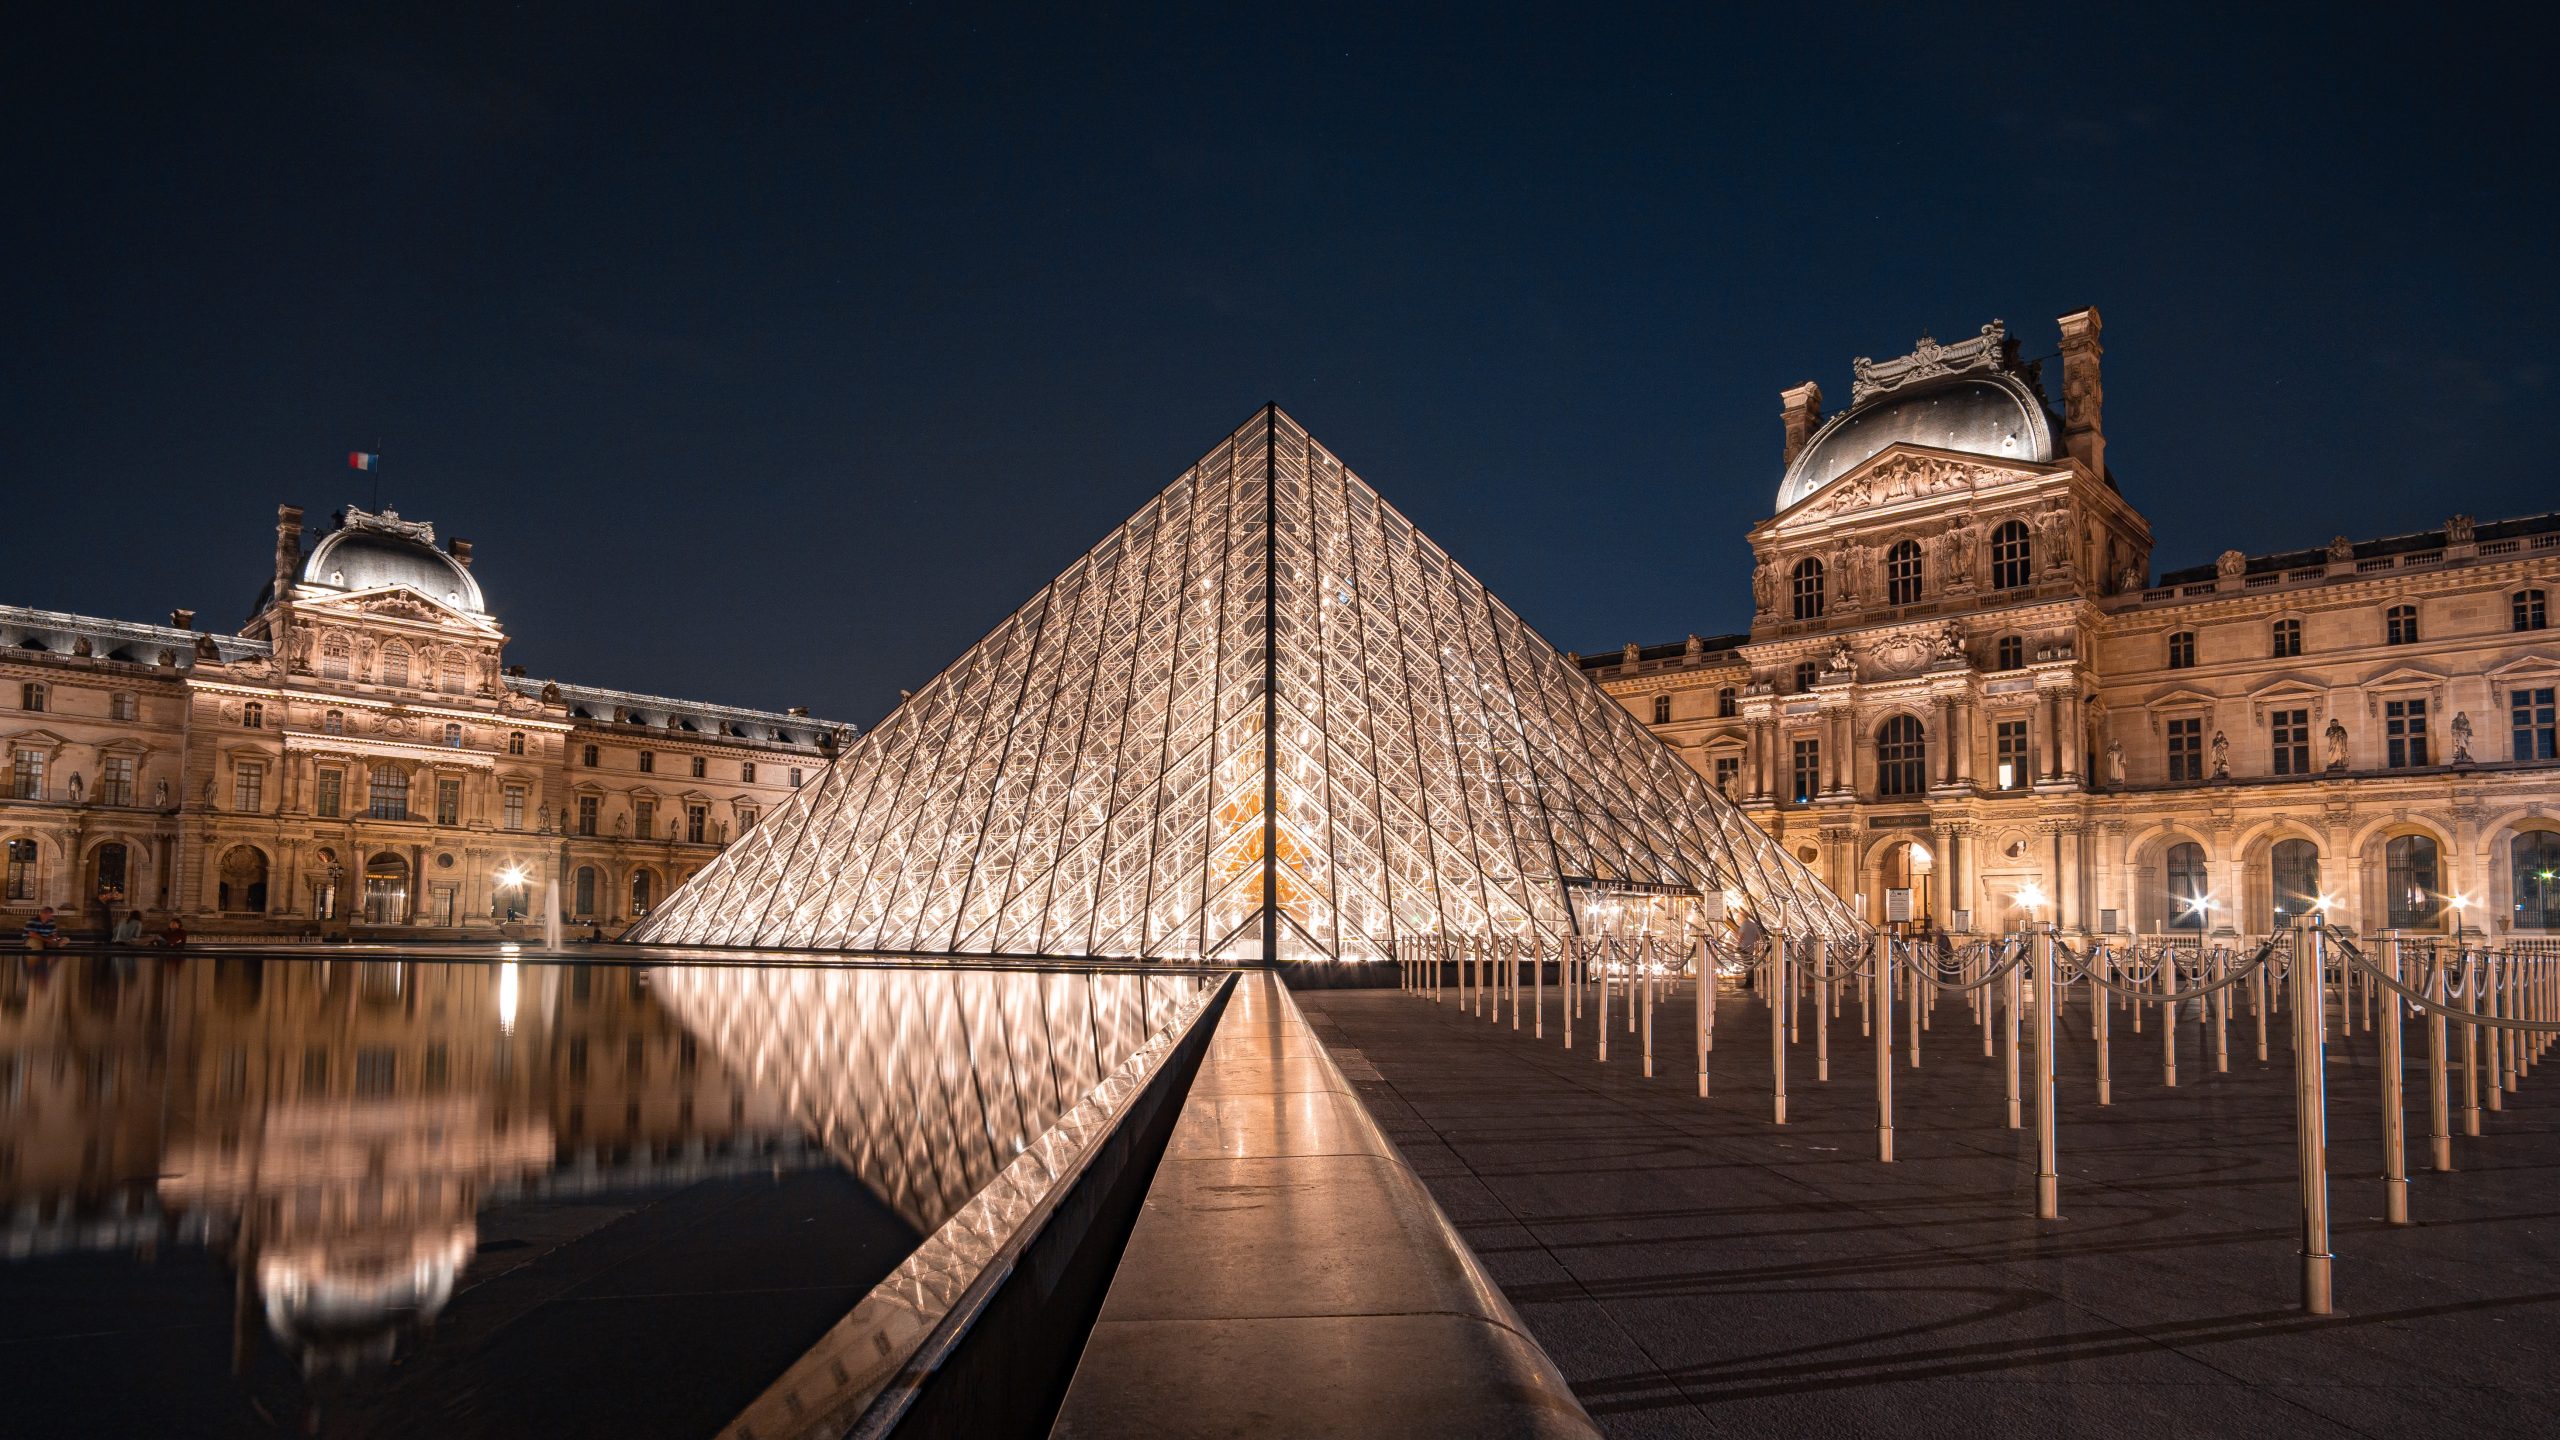 Het Louvre, het best bezochte museum ter wereld. Deze kunstwerken mag je niet missen.